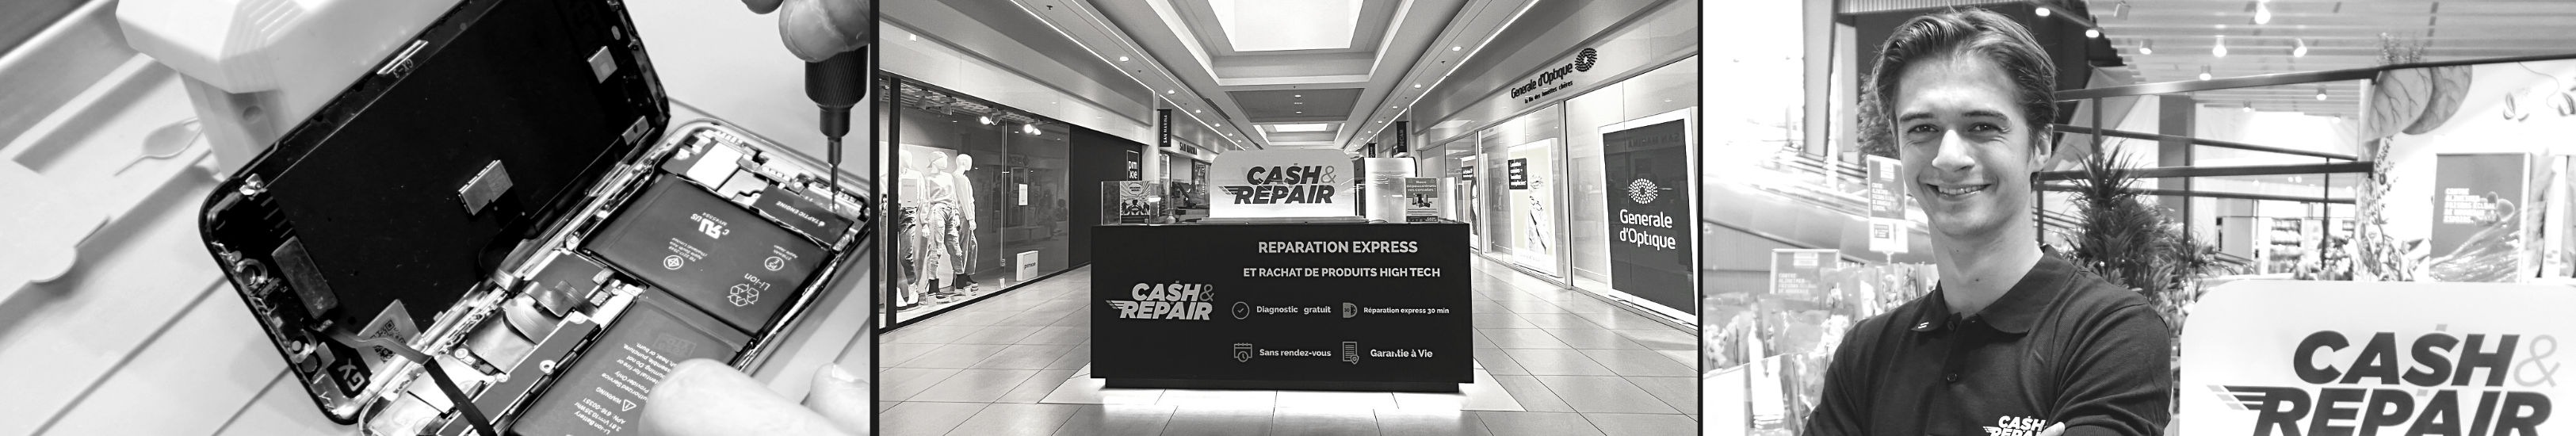 - Atelier de réparation Cash and Repair Ajaccio